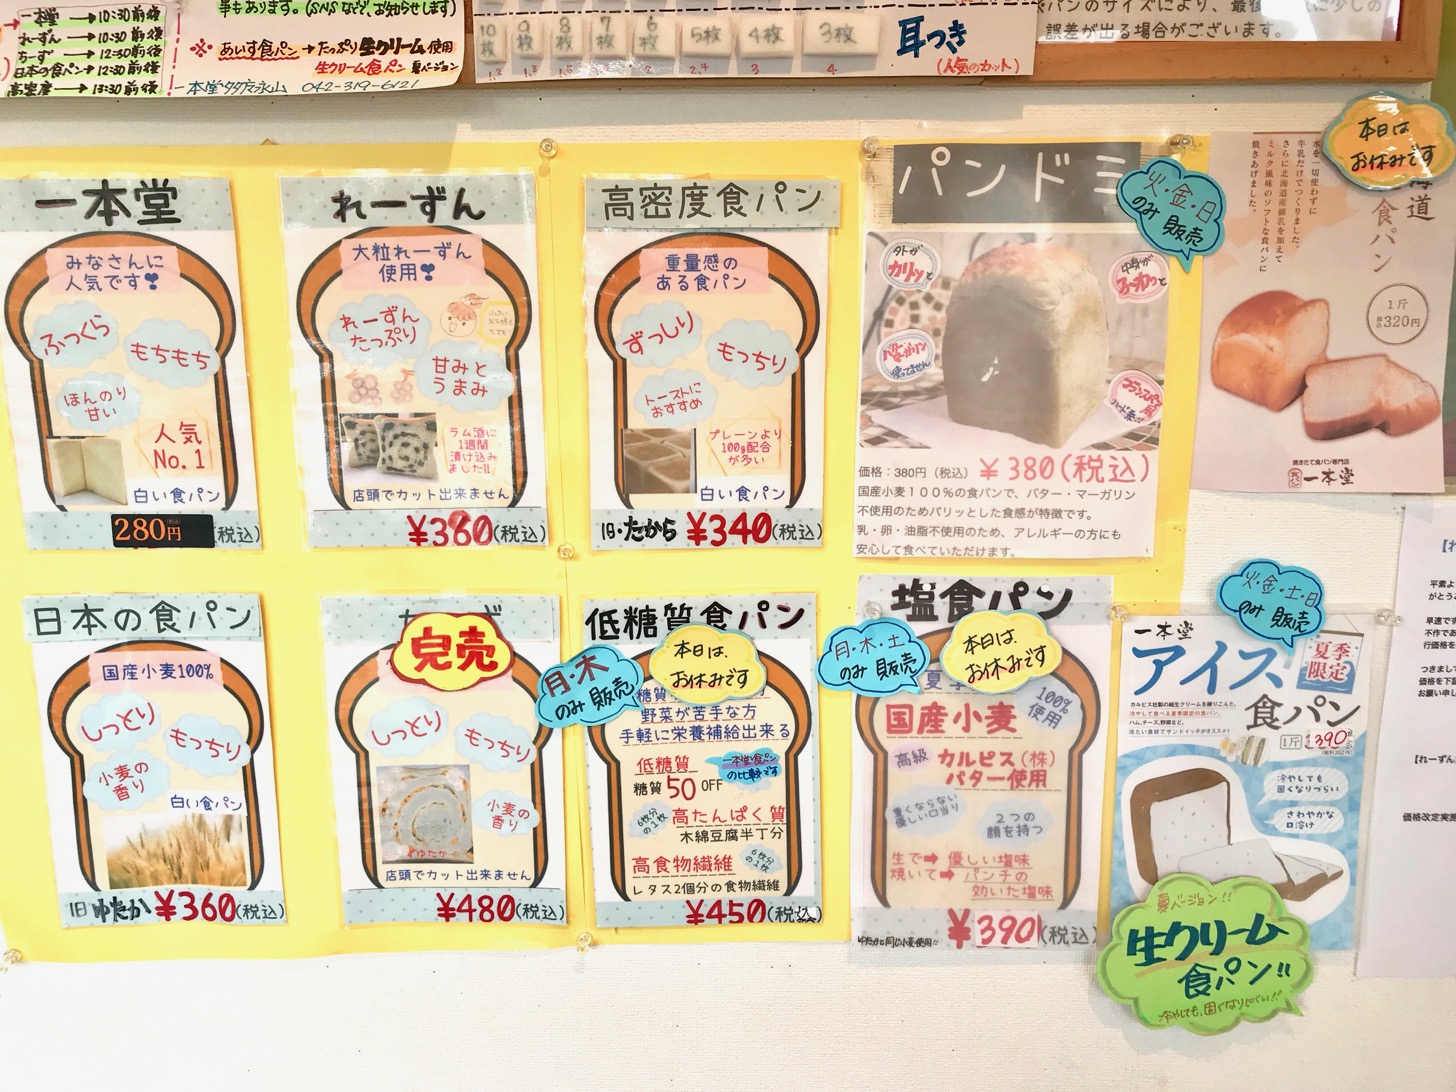 一本堂 多摩永山店 で人気の焼きたて食パンを買ってみた 多摩ポン